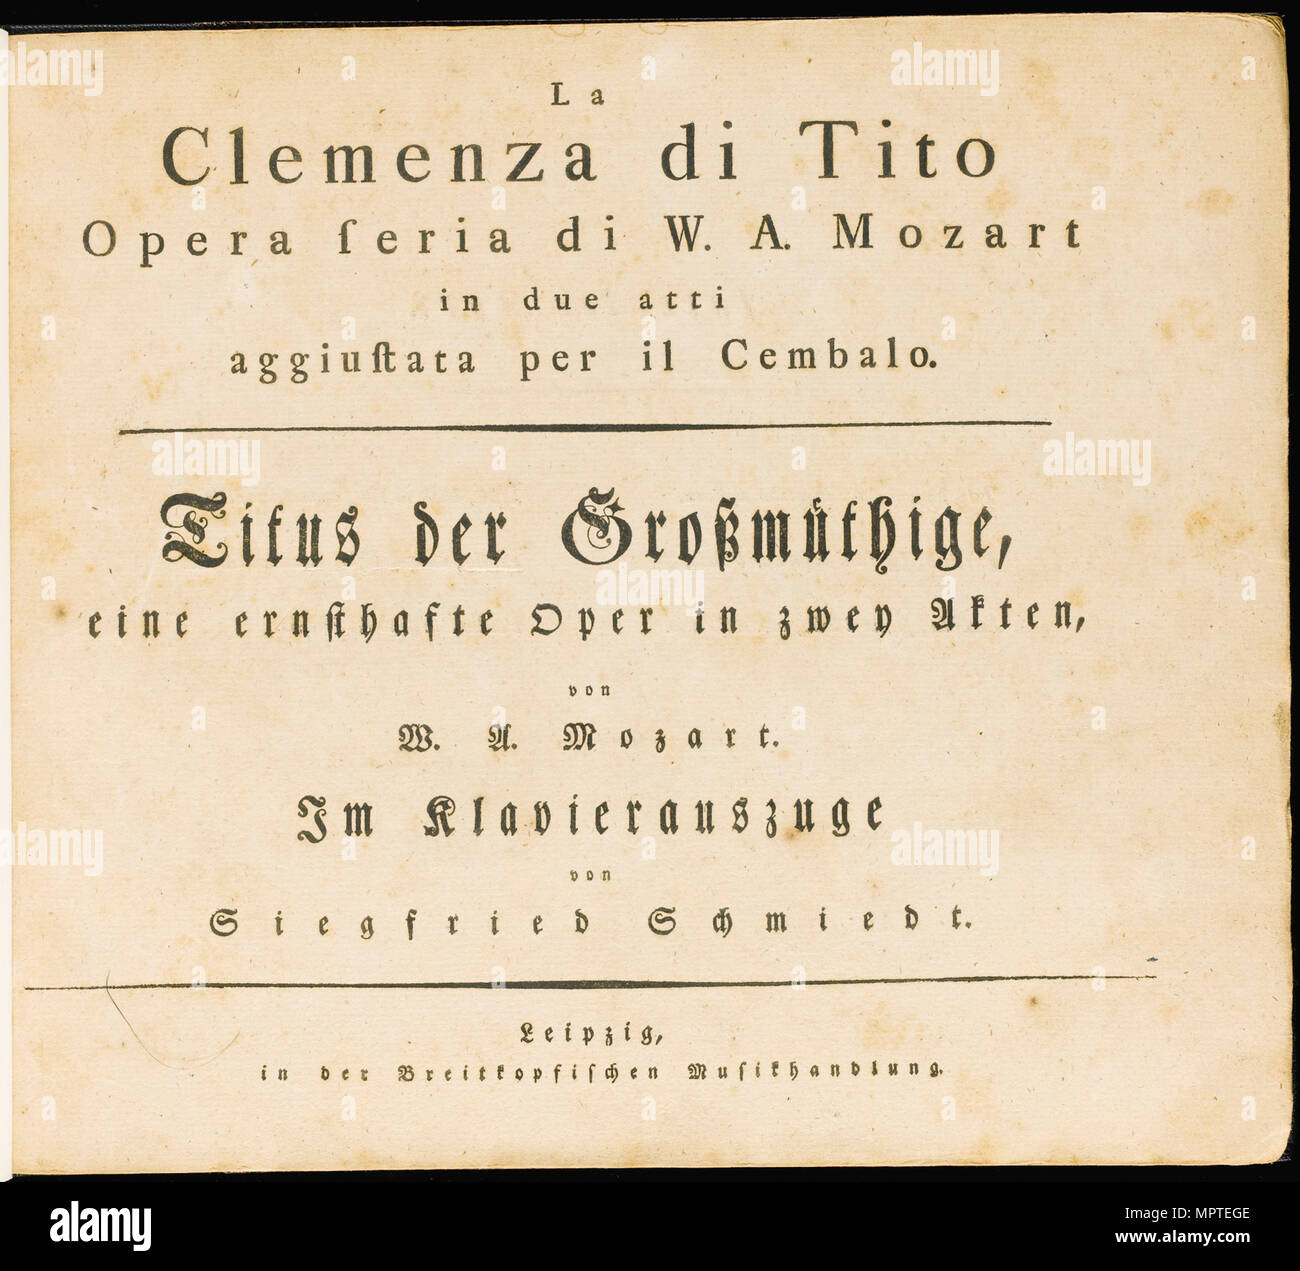 La clemenza di Tito. The first edition of the vocal score, 1795. Stock Photo